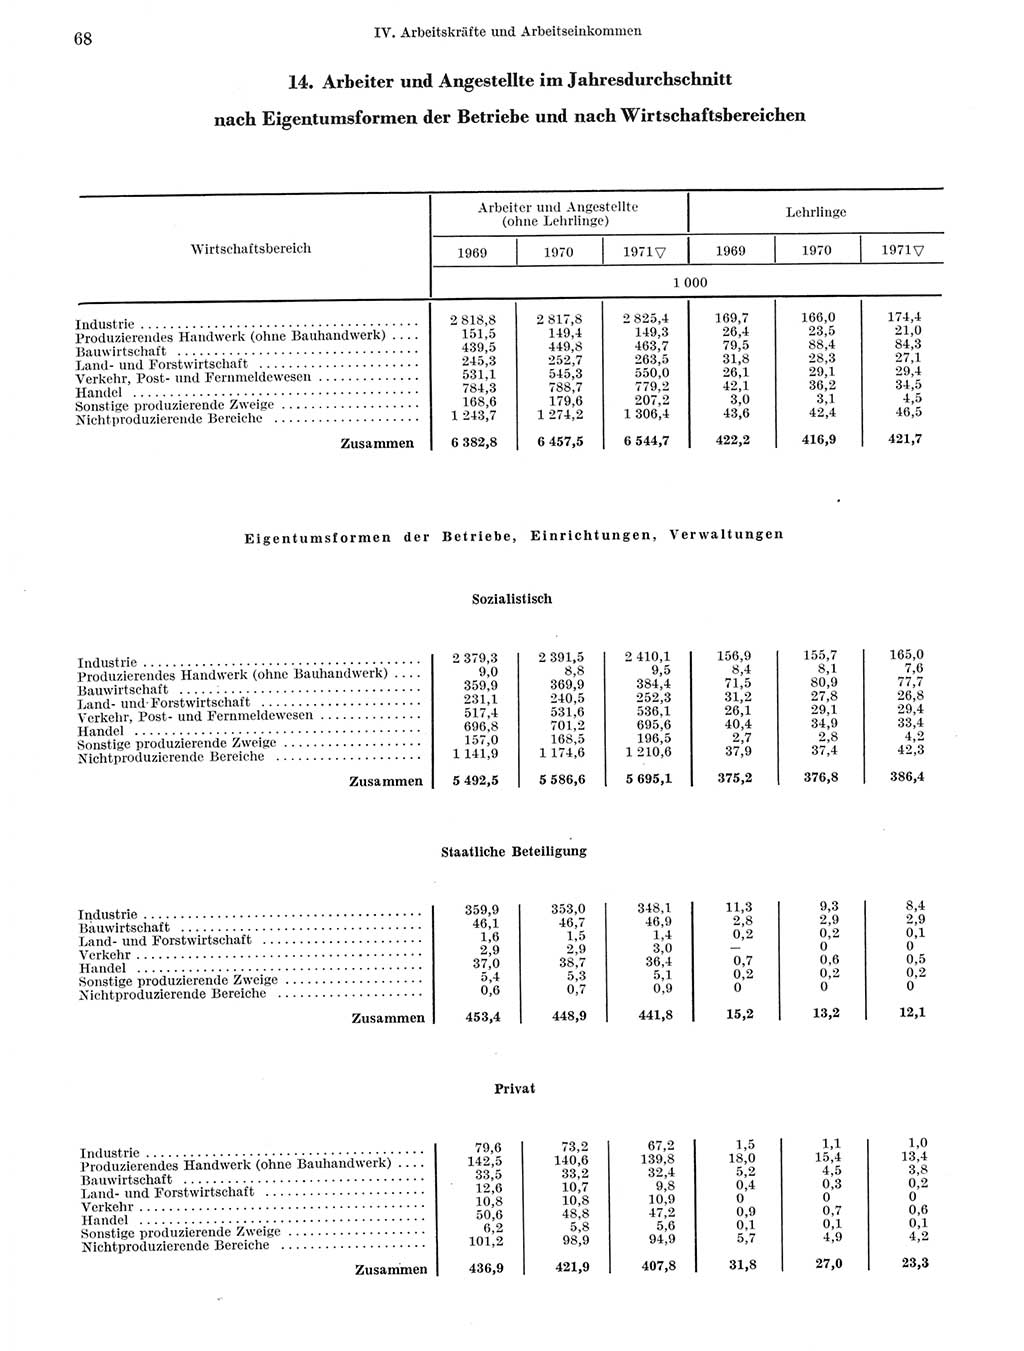 Statistisches Jahrbuch der Deutschen Demokratischen Republik (DDR) 1972, Seite 68 (Stat. Jb. DDR 1972, S. 68)